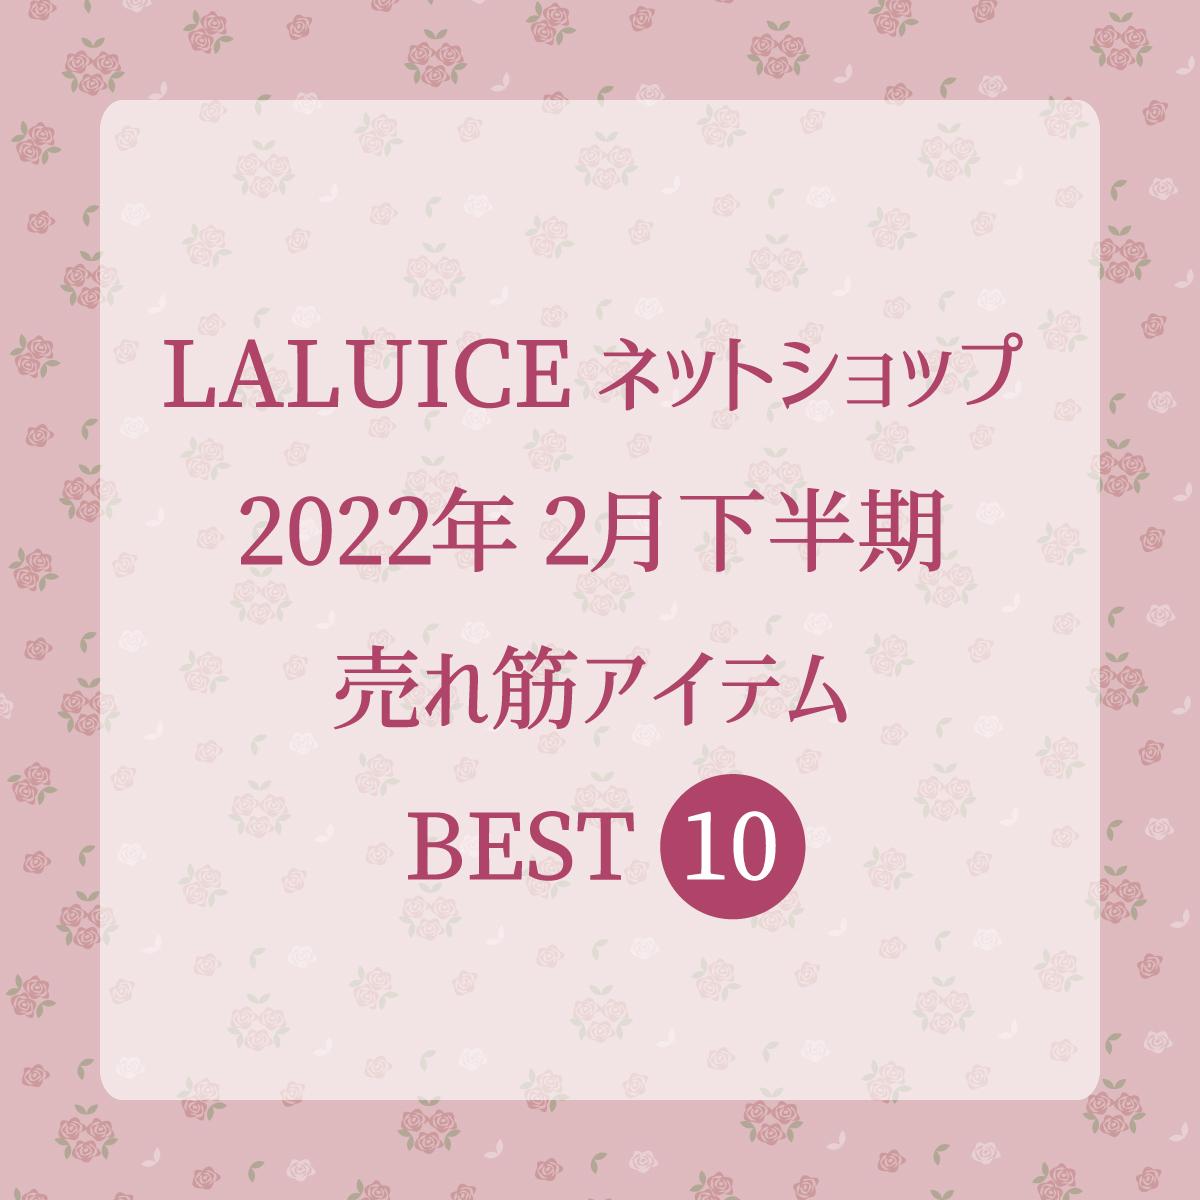 2022年2月下半期(2/16～2/28) LALUICEネットショップ売れ筋アイテム BEST10